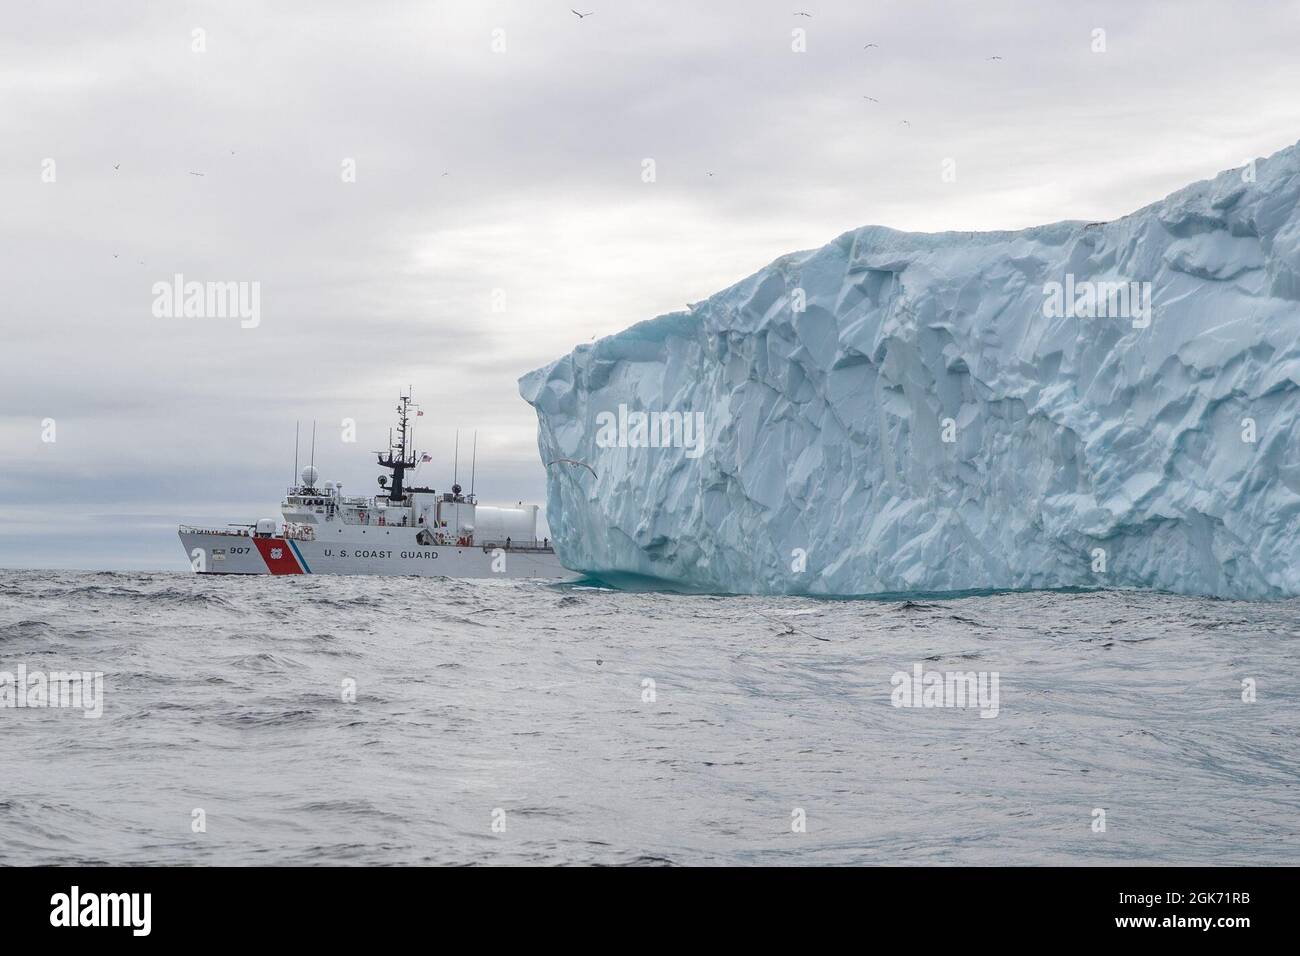 LABRADOR SEA -- (Aug 19, 2021) die USCGC Escanaba (WMEC 907) durchfährt einen Eisberg in der Labradorsee. Die Fräser sind in der Region am Ende der warmen Jahreszeit in Betrieb, wodurch das Risiko reduziert wird. Die Escanaba ist ein 270 Meter langer, berühmter Mittelausdauerschneider mit einer Besatzung von rund 100 Personen und führt Missionen durch, die die Sicherheit im Seeverkehr und die Strafverfolgung betonen Stockfoto